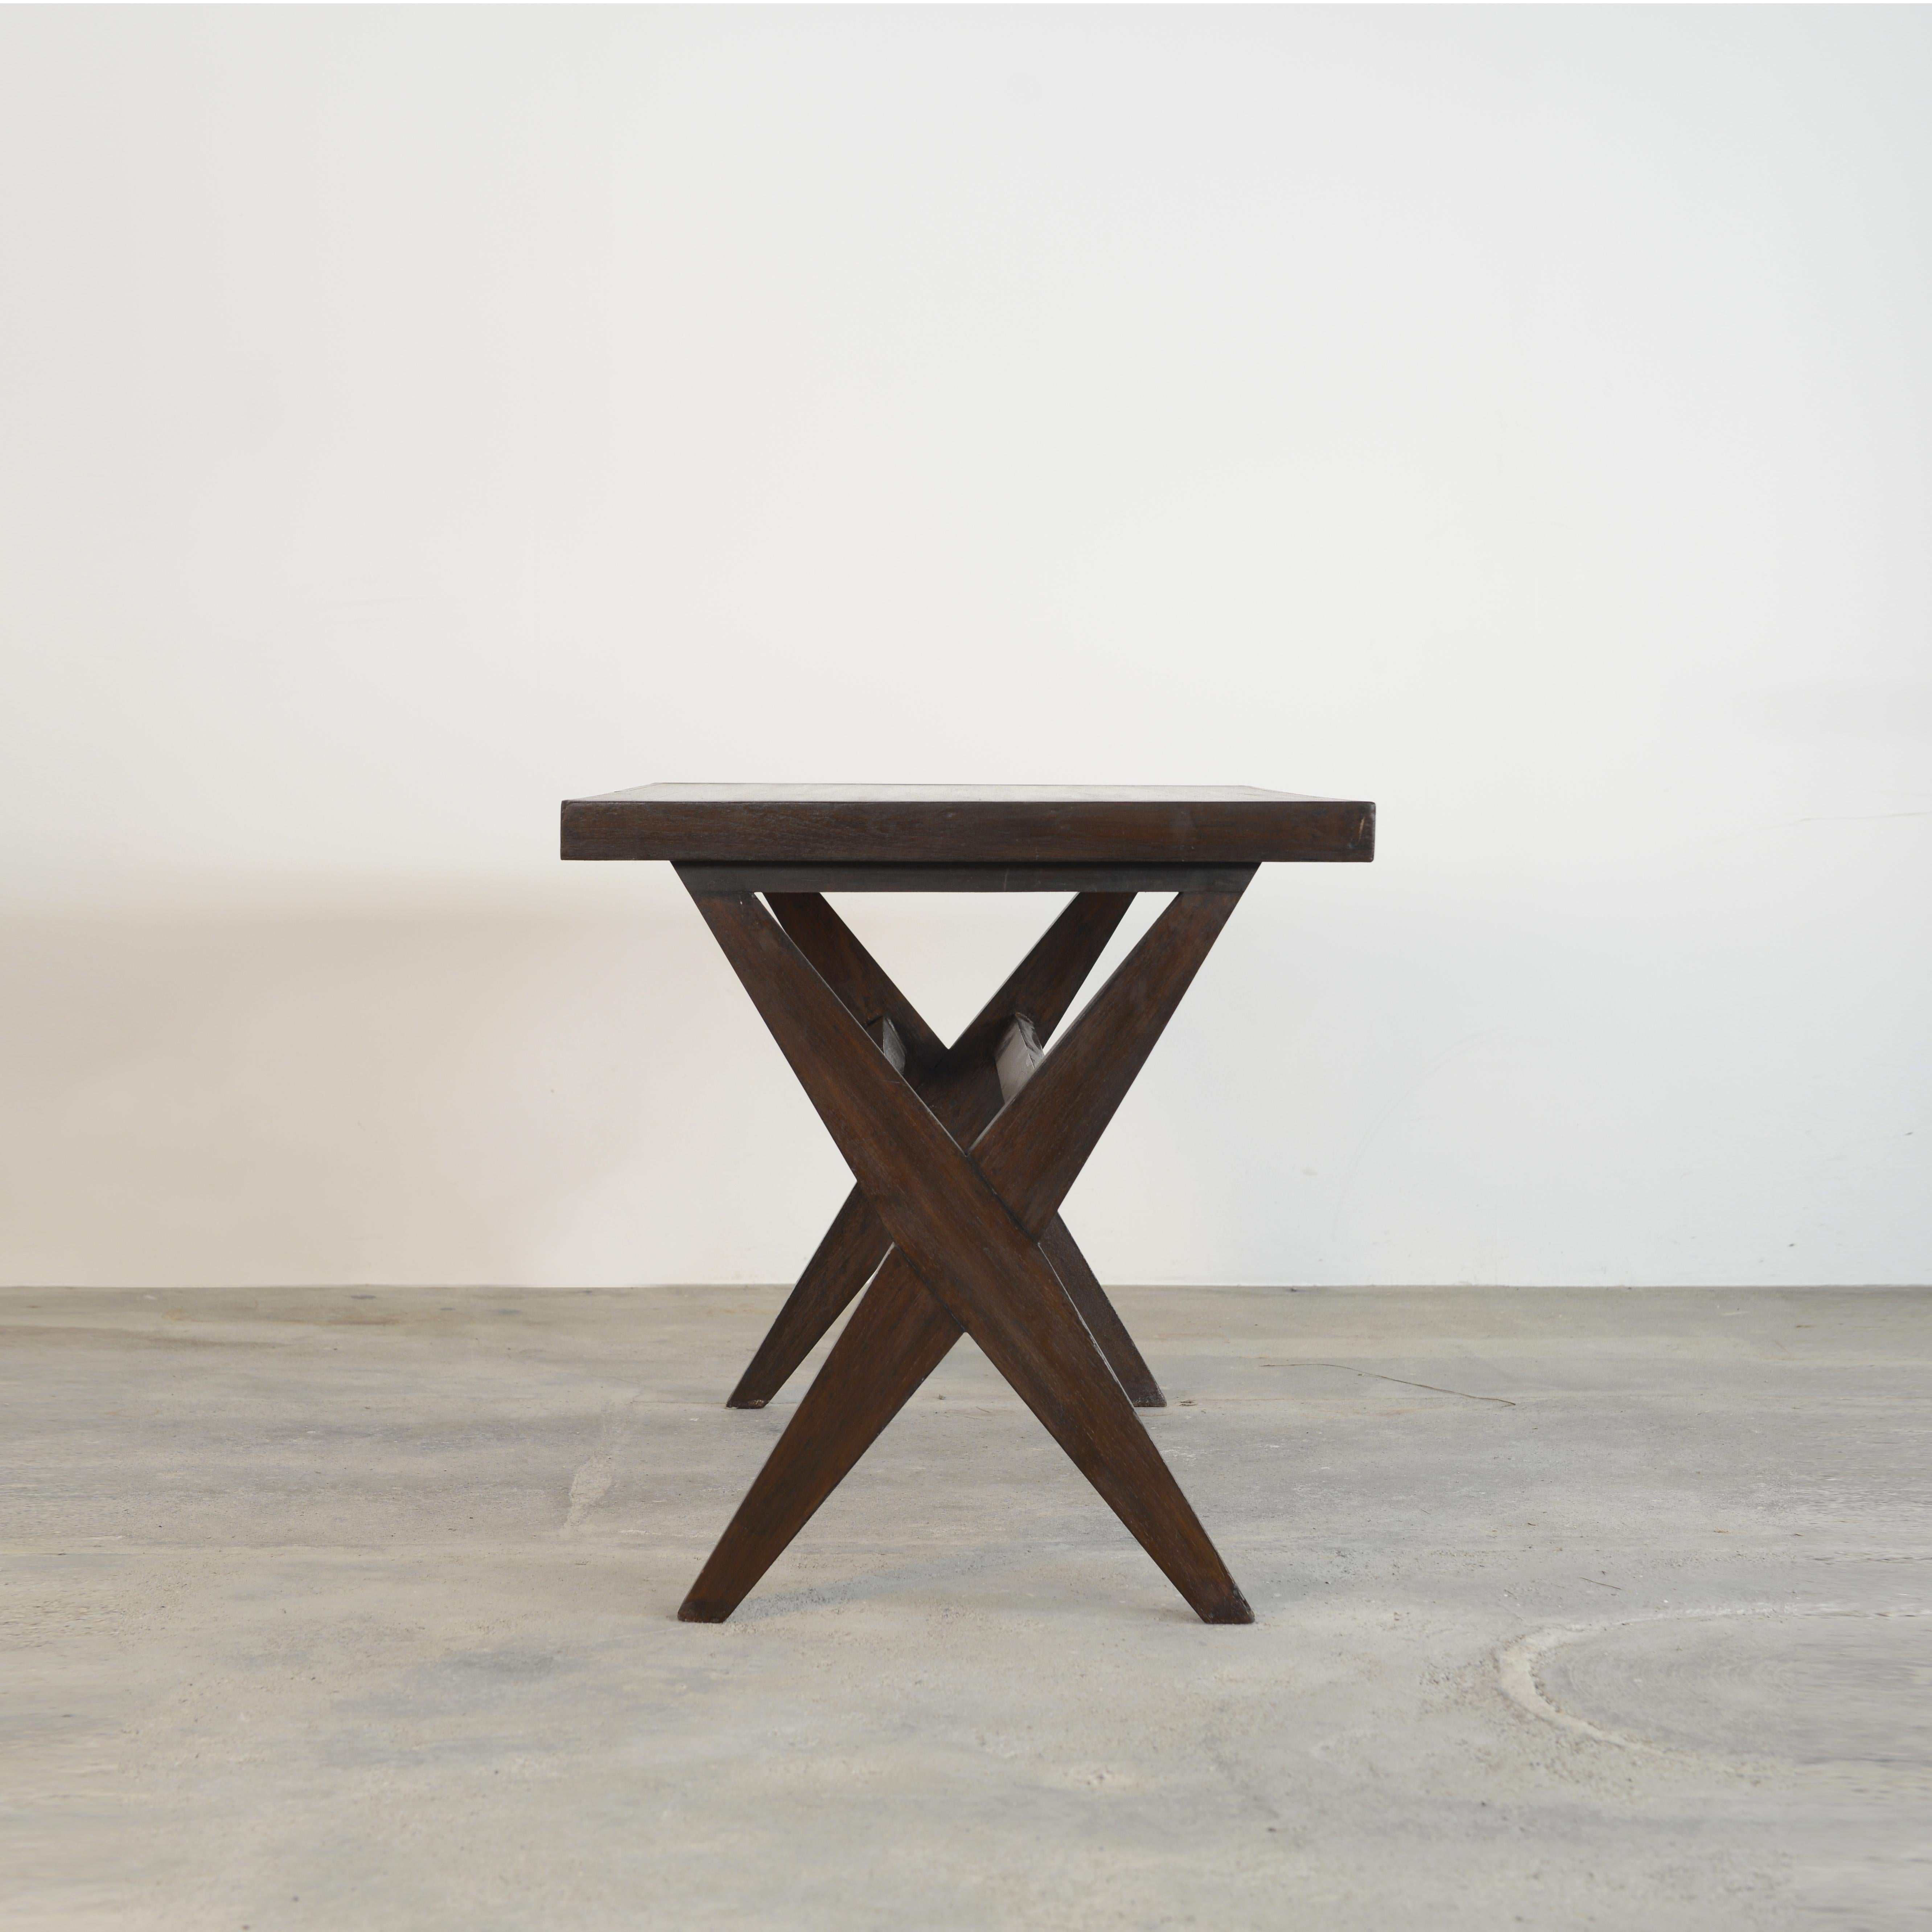 Cette table est une pièce de design emblématique. Il est brut dans sa simplicité ; il présente une matière légèrement patinée. Sa forme est magnifiquement fragile et sa couleur est merveilleuse. Nous ne les restaurons pas trop. Nous conservons donc